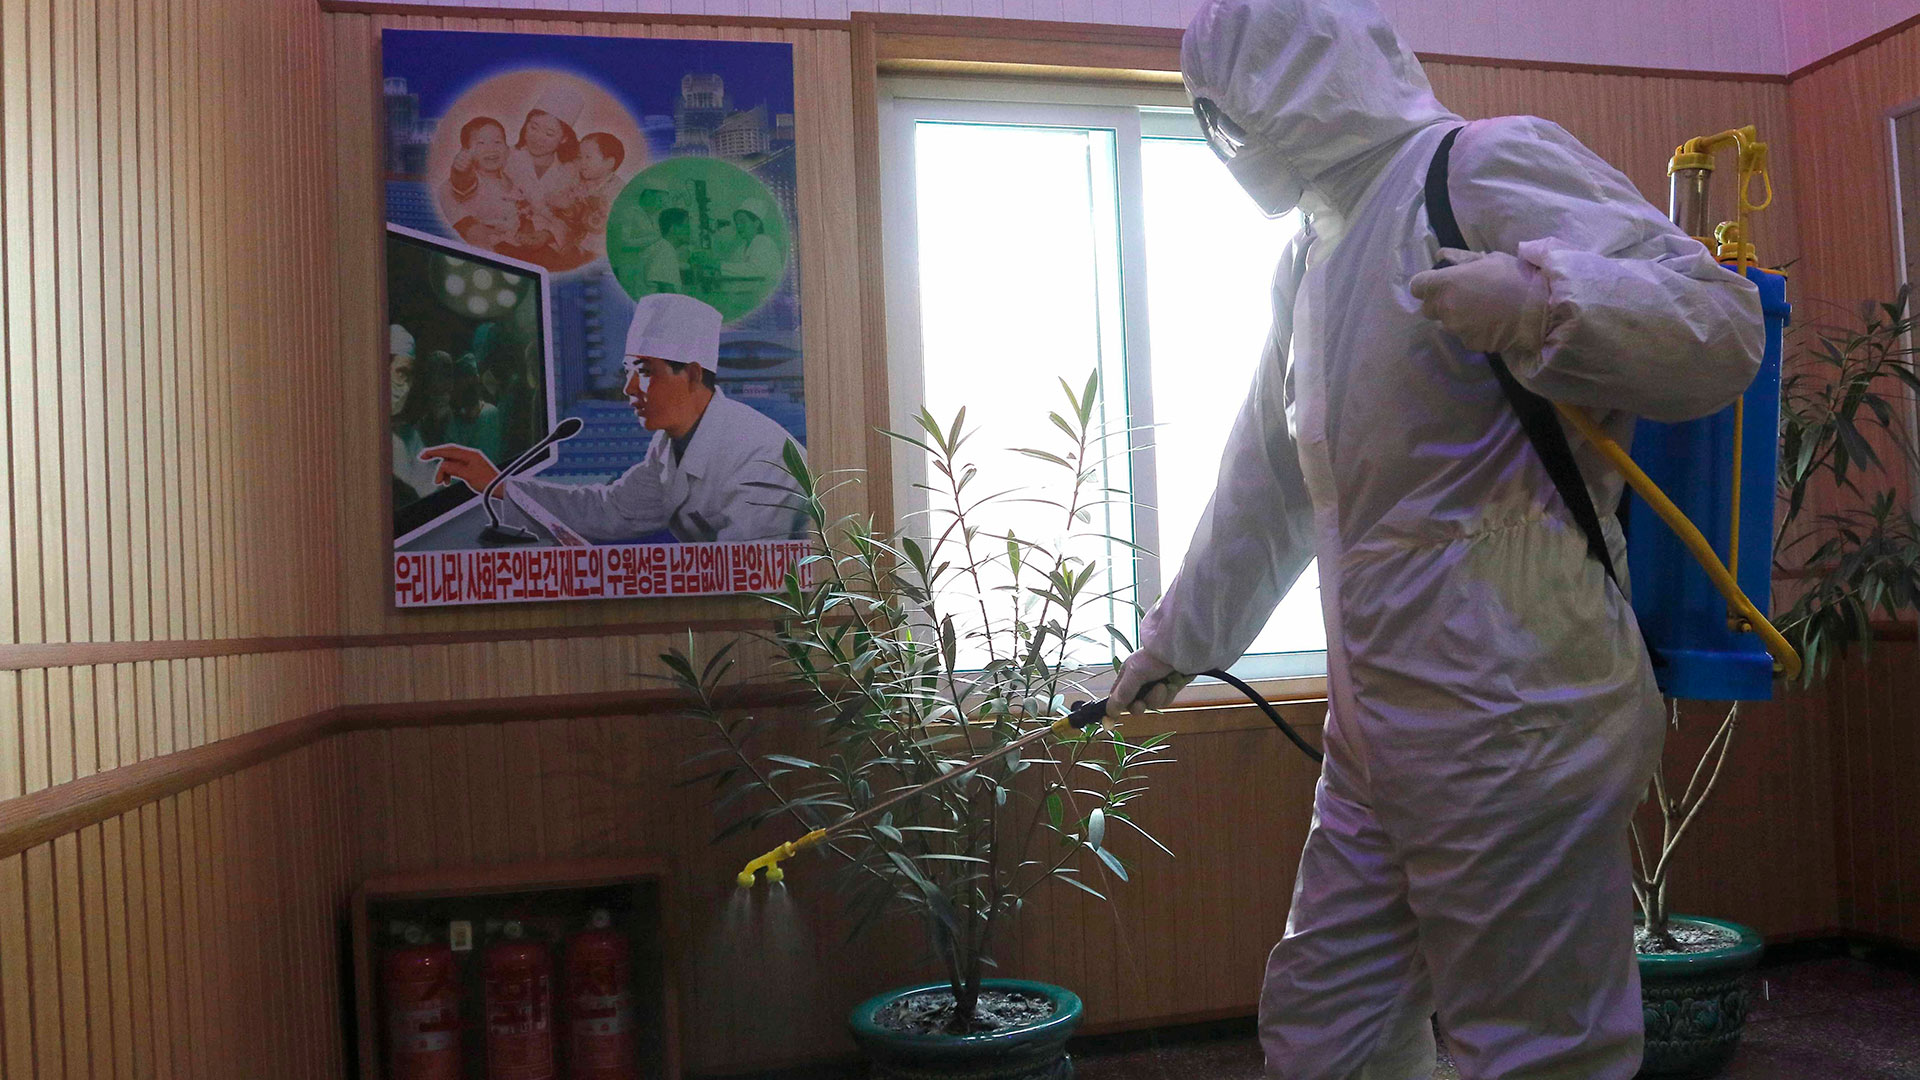 Un trabajador sanitario desinfecta una oficina en Corea del Norte, tras los primeros casos de COVID confirmados en el país.
(AP)